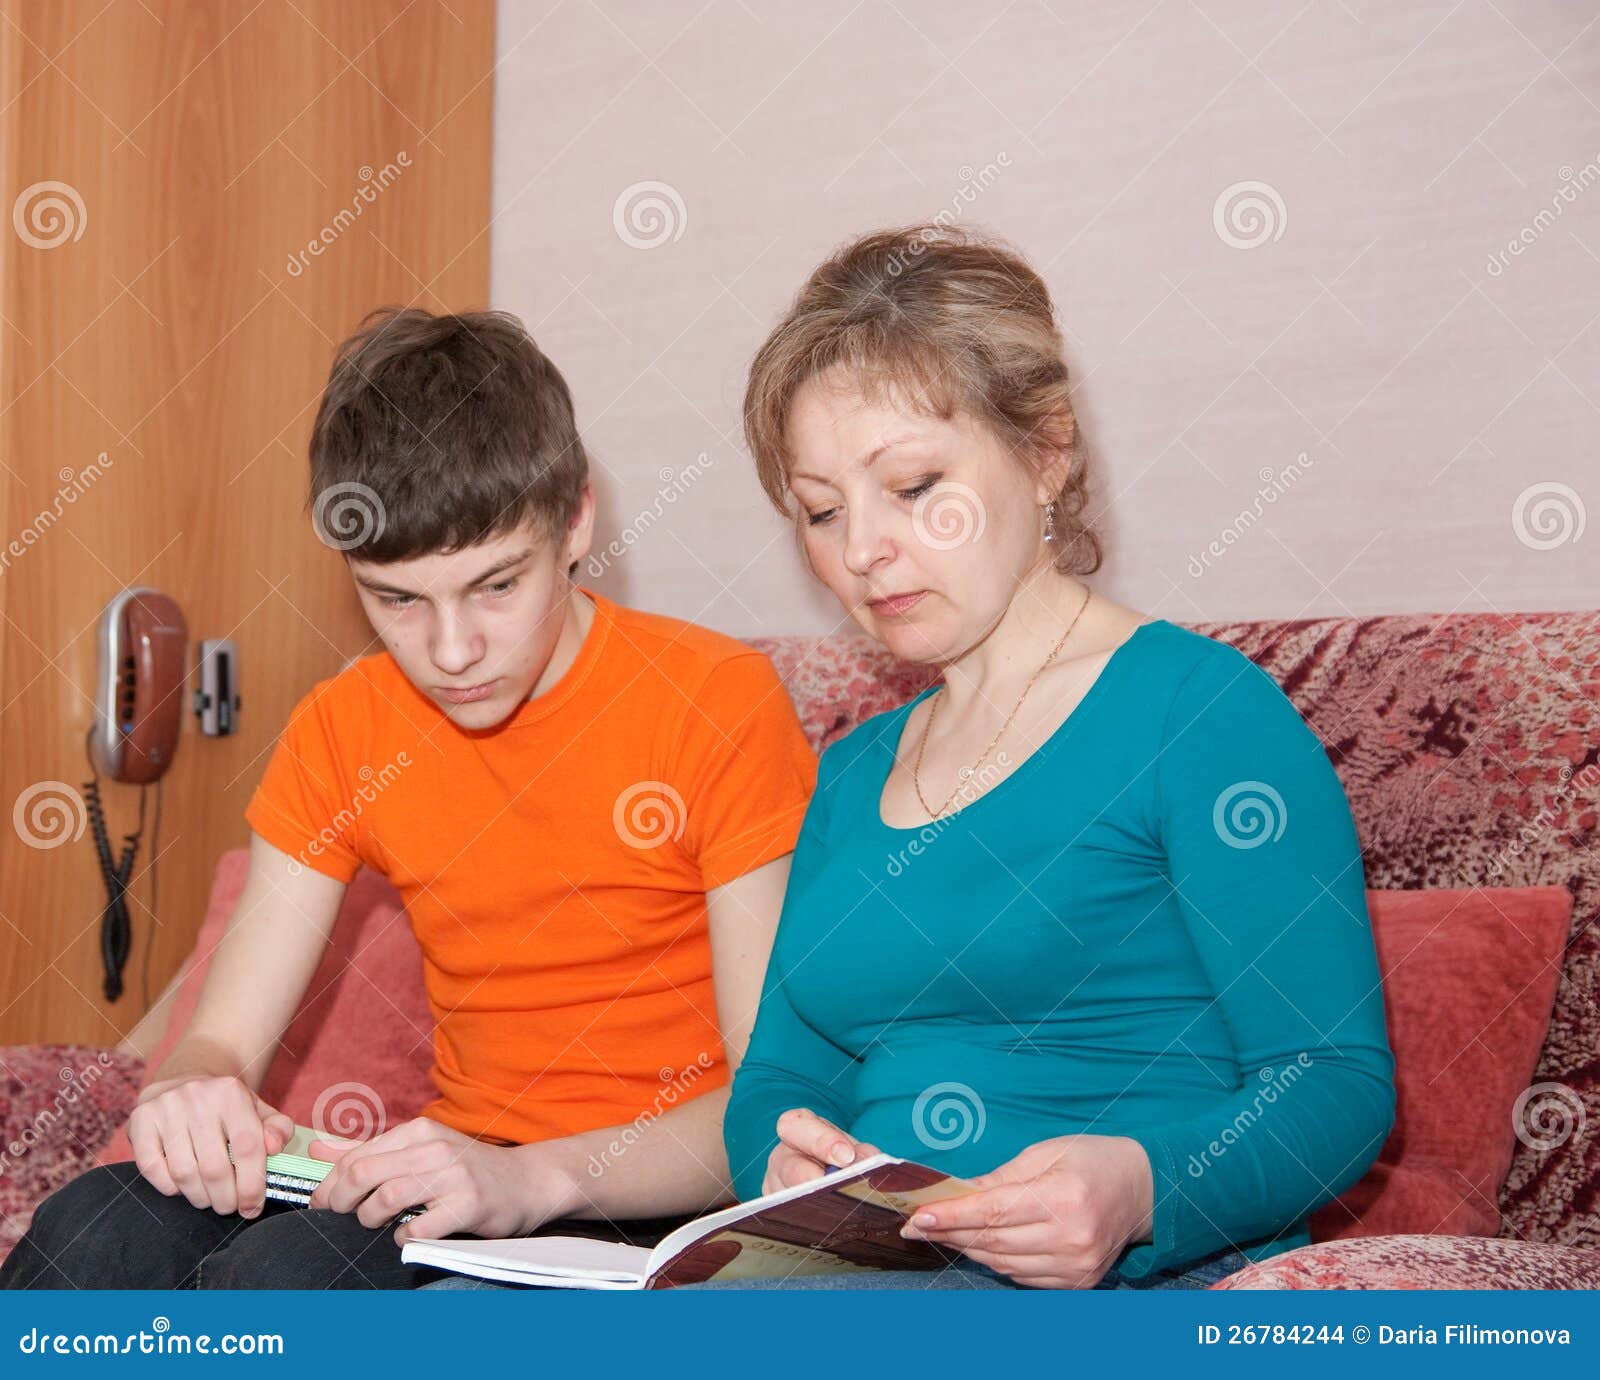 Мама учит сына реально. Мать проводит сына. Мать и сын учатся. Мама показывает сыну картинку. Мама помогает сыну с уроками.